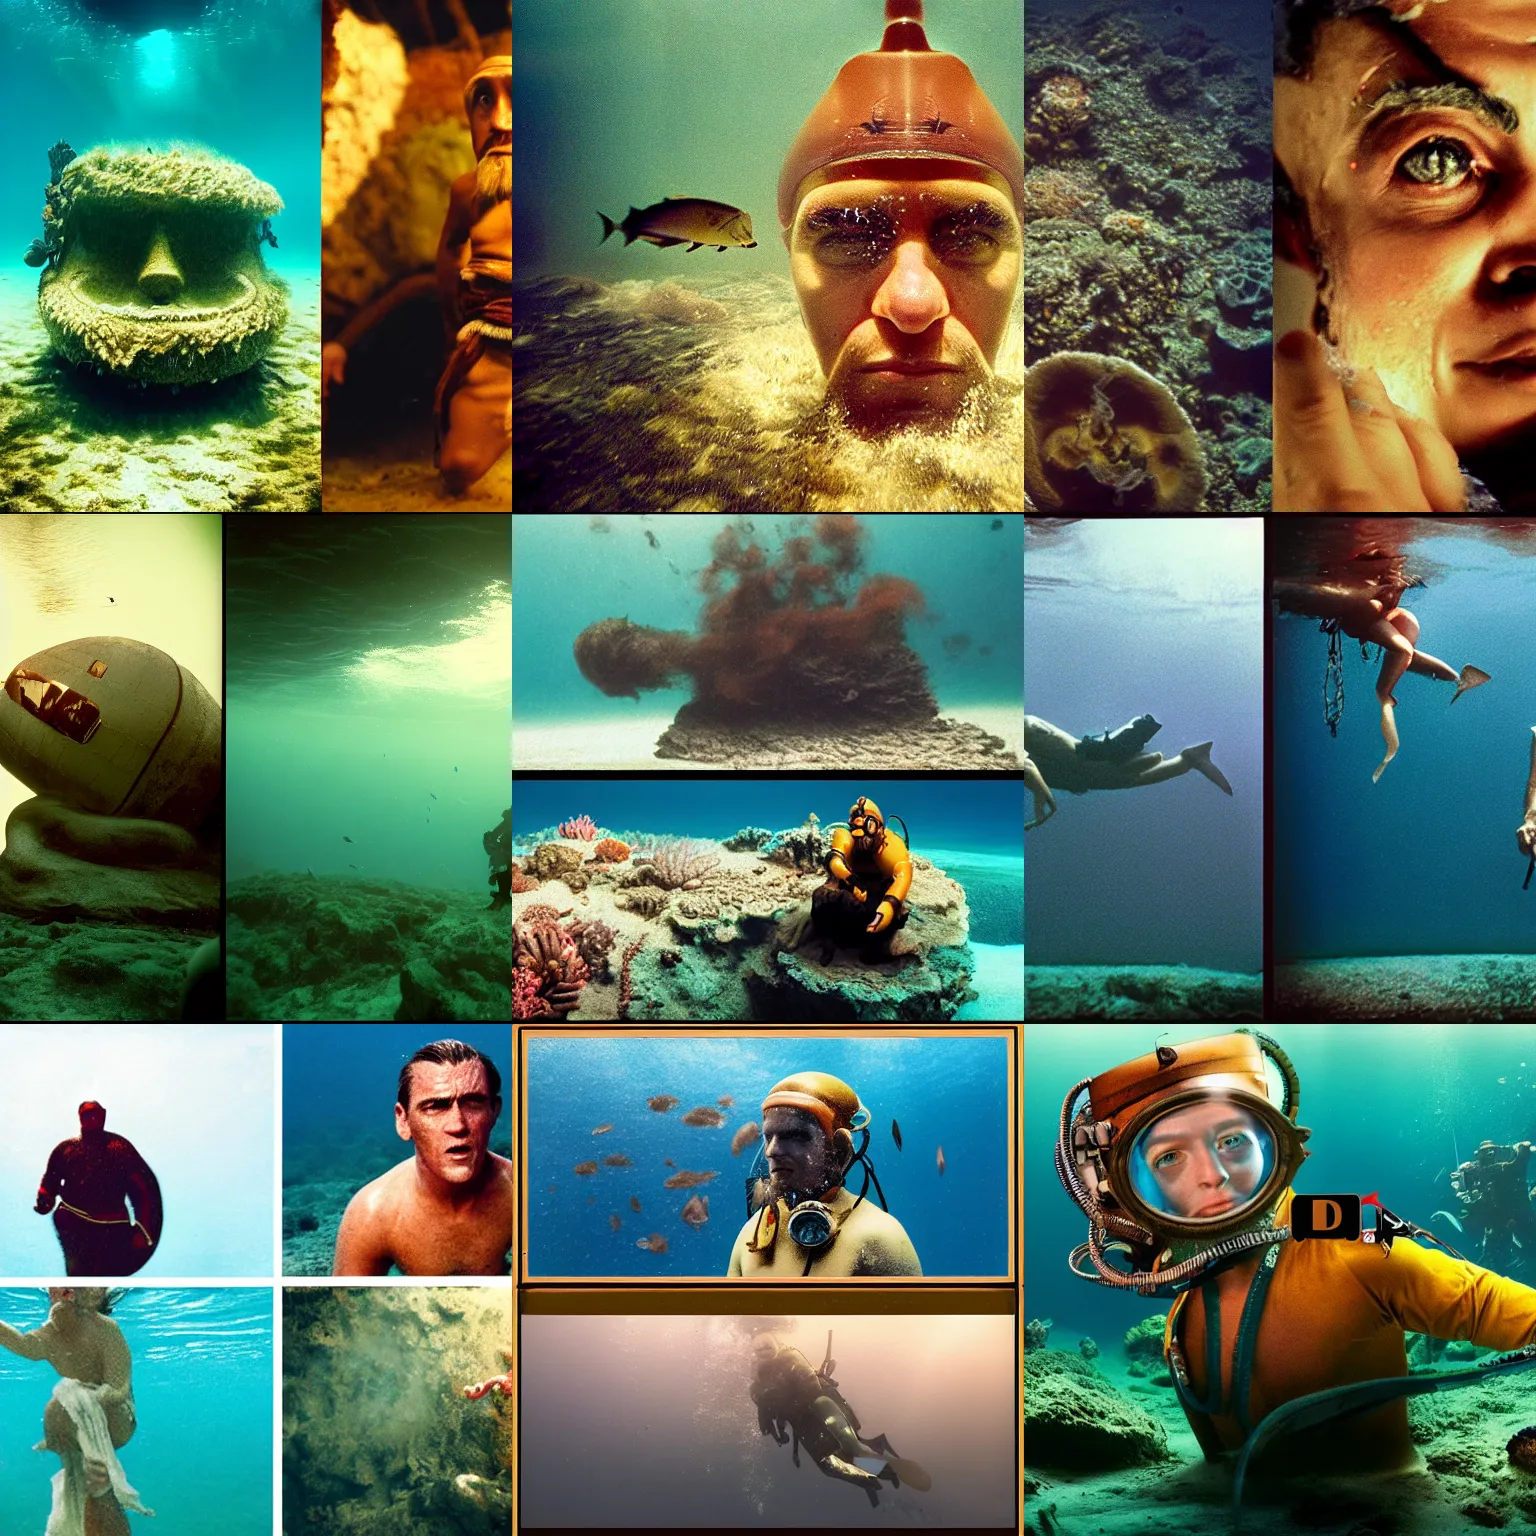 Prompt: Kodak portra 160, 4K, split split screens: famous deep sea diver in low budget kon-tiki movie remake, underwater scene